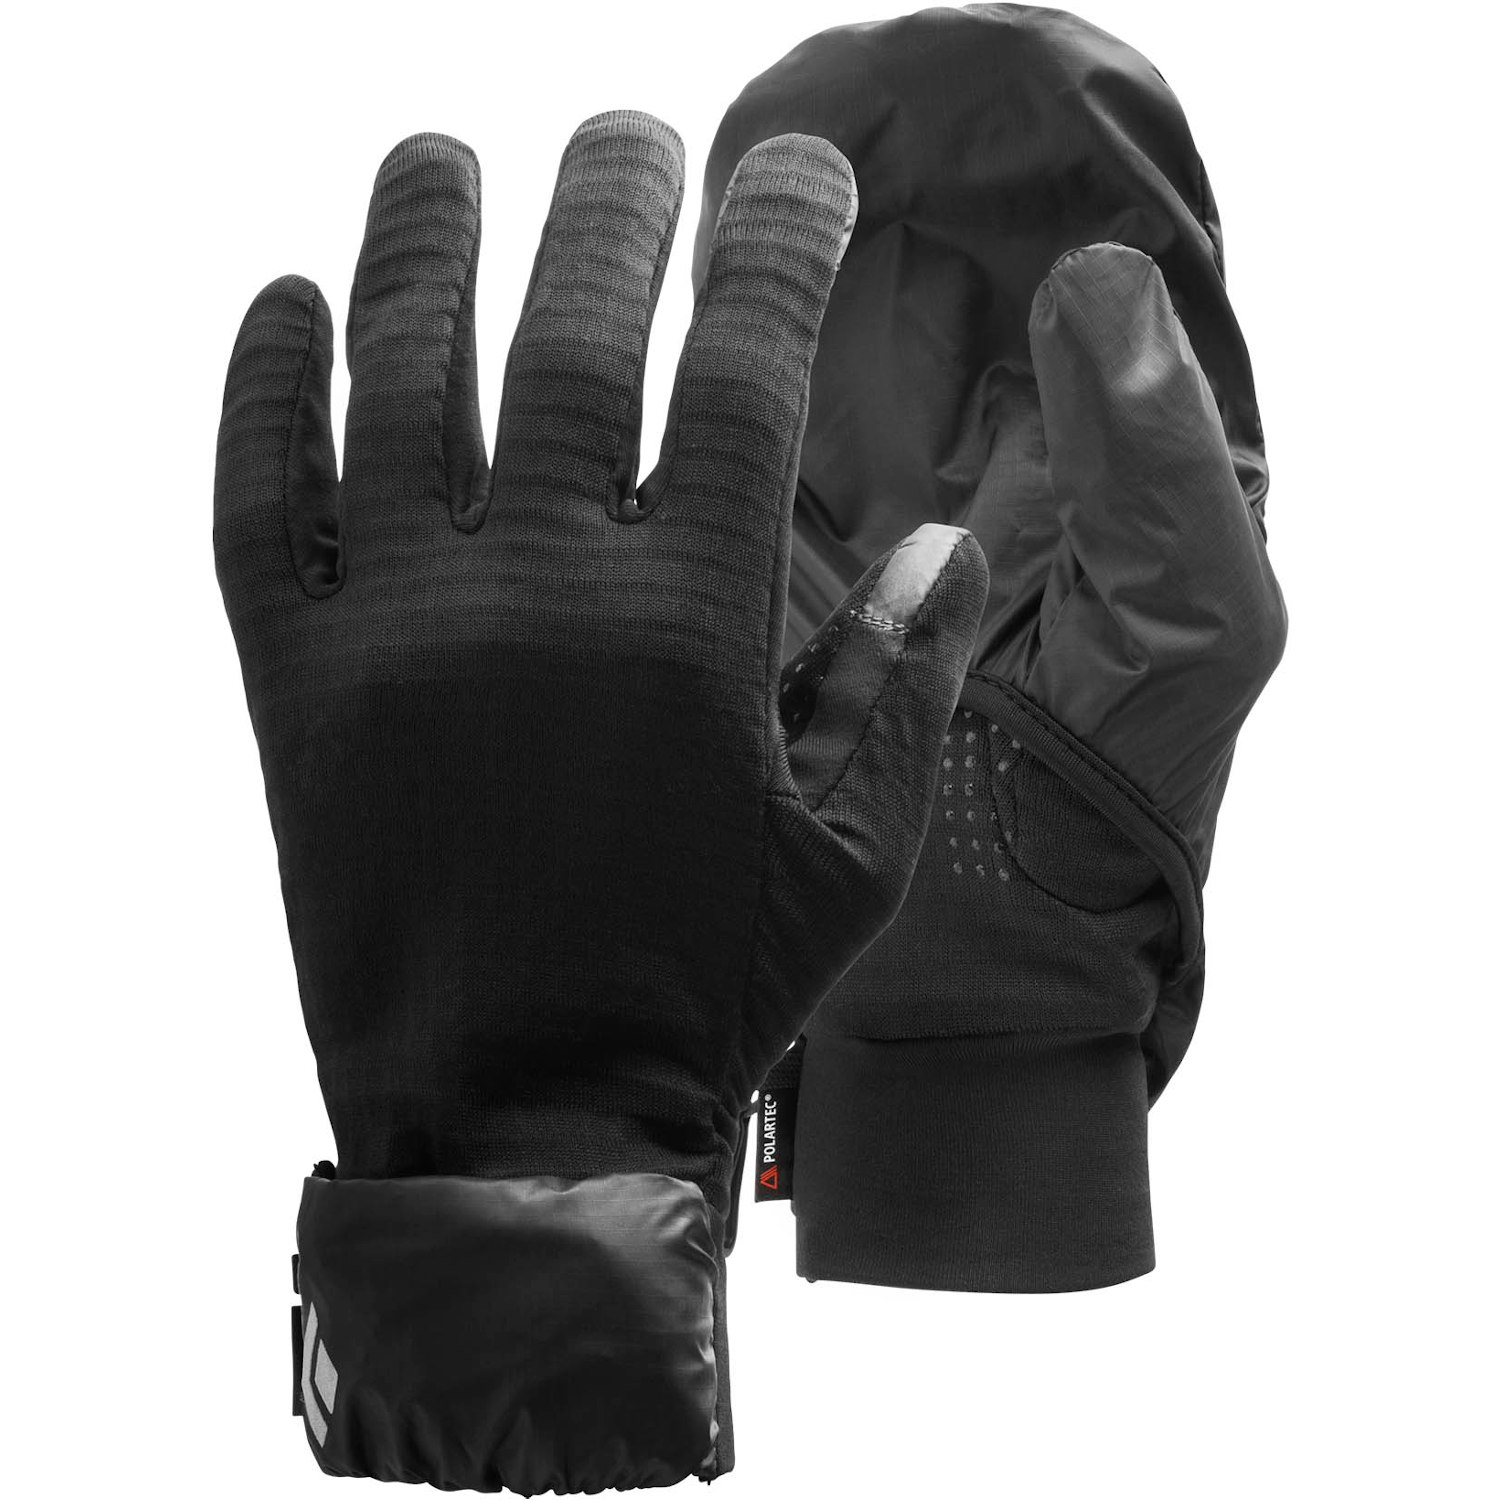 Produktbild von Black Diamond Wind Hood Gridtech Handschuhe - Black